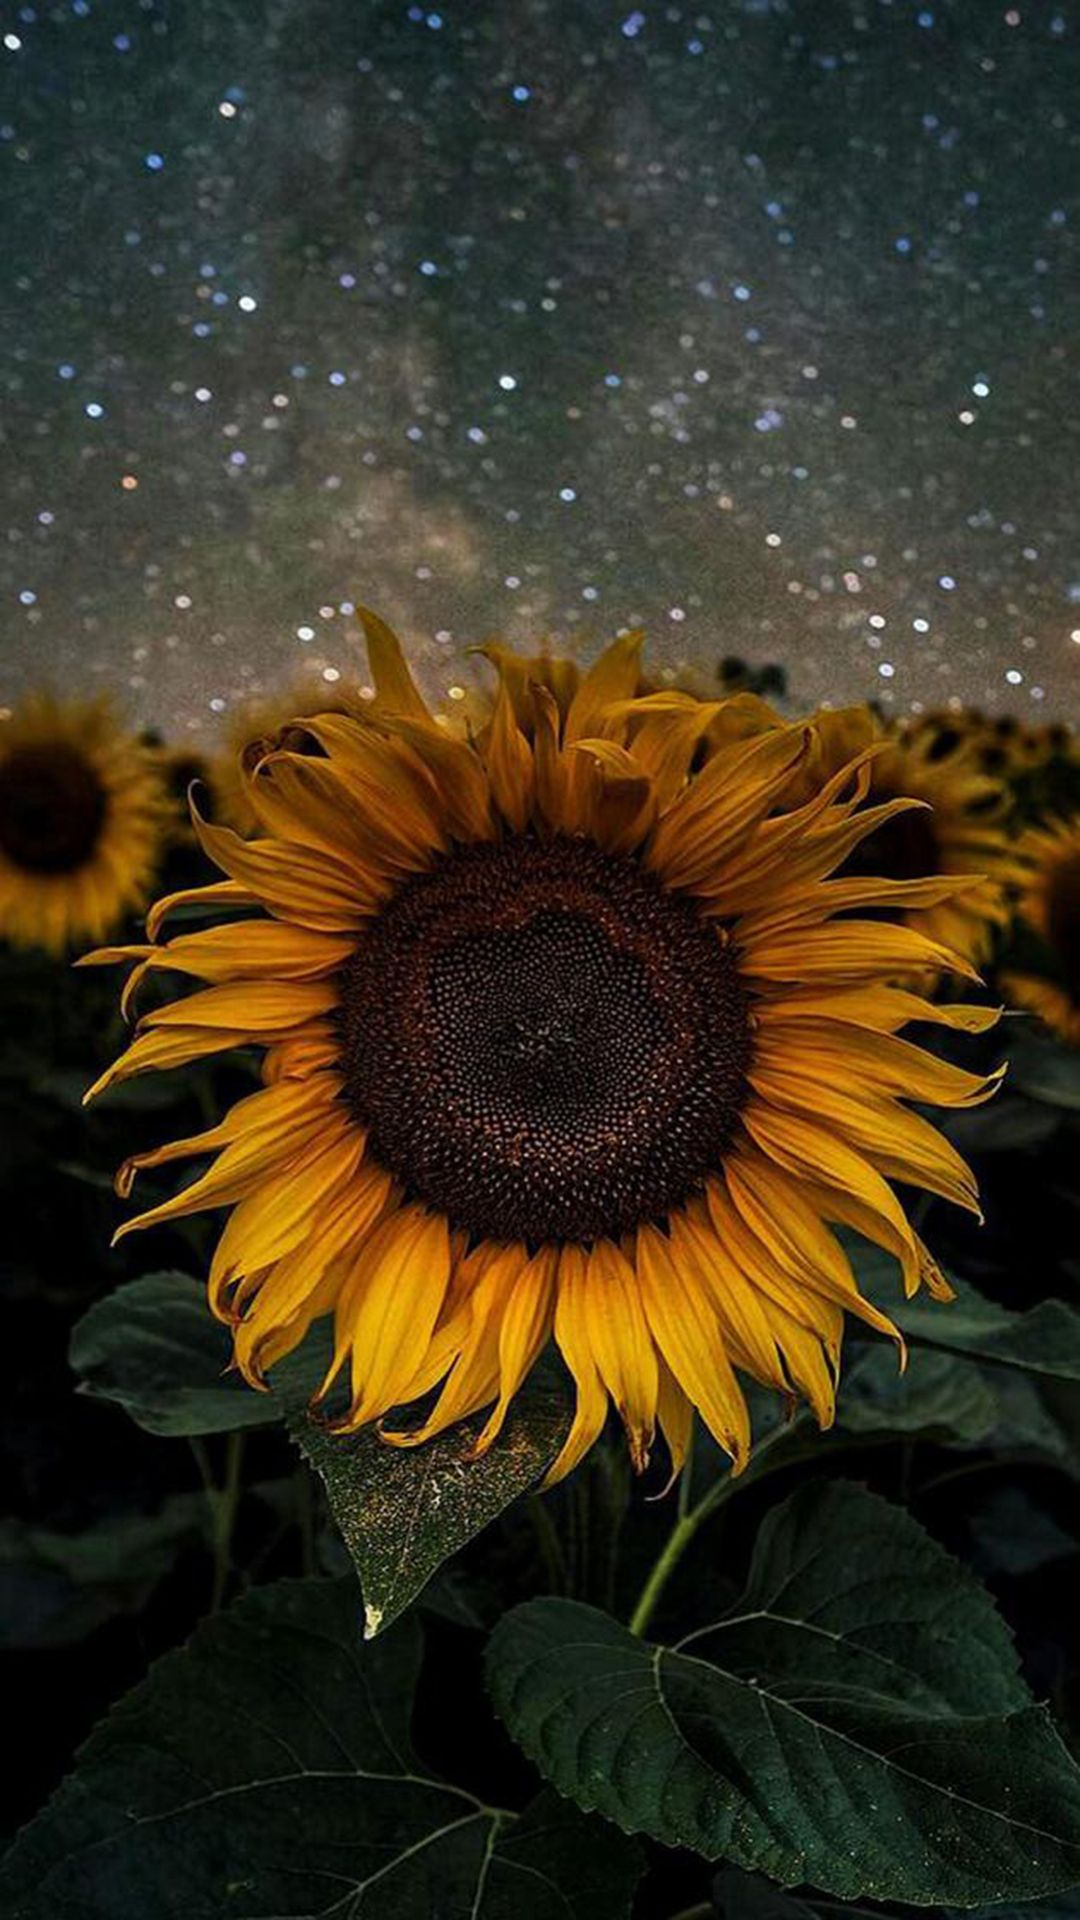 Sunflower wallpaper for your phone - Sunflower